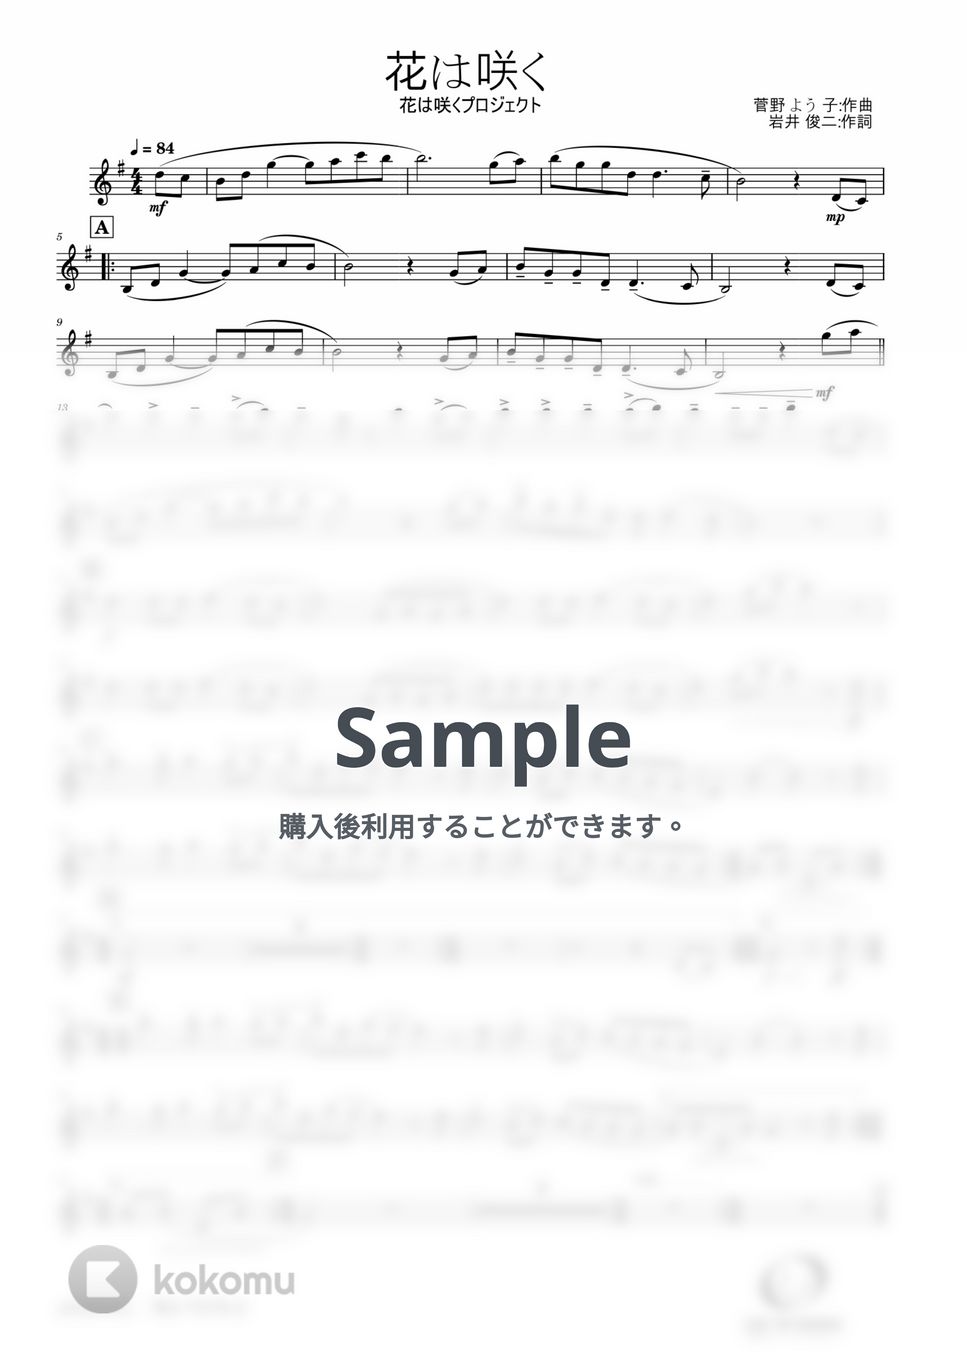 菅野 よう子 - 花は咲く (Clarinet Solo) by Windworld